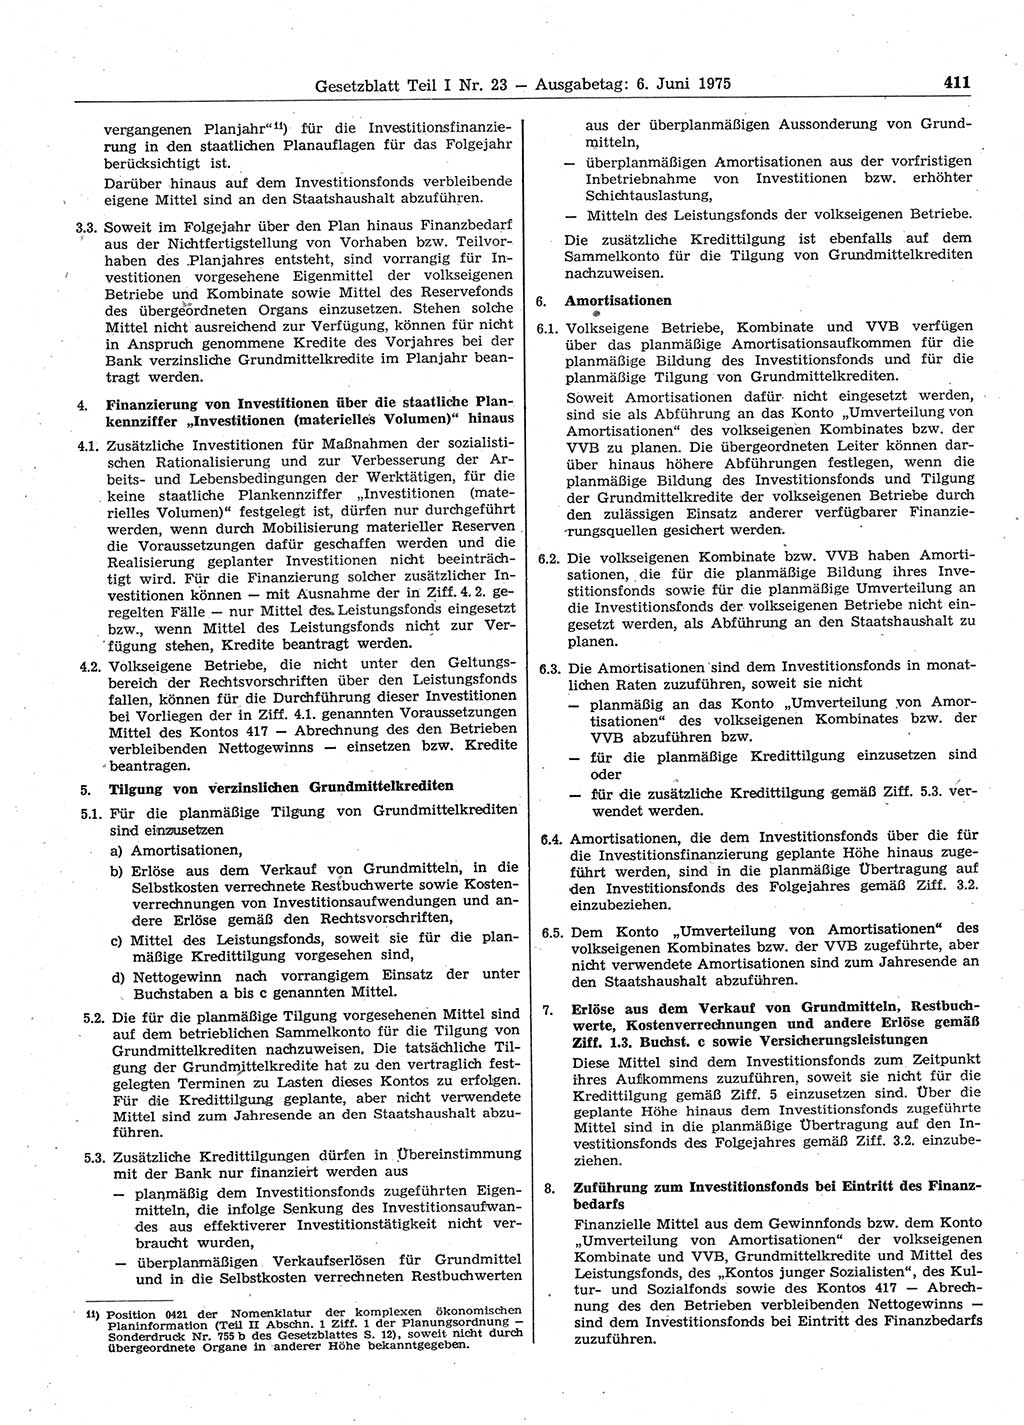 Gesetzblatt (GBl.) der Deutschen Demokratischen Republik (DDR) Teil Ⅰ 1975, Seite 411 (GBl. DDR Ⅰ 1975, S. 411)